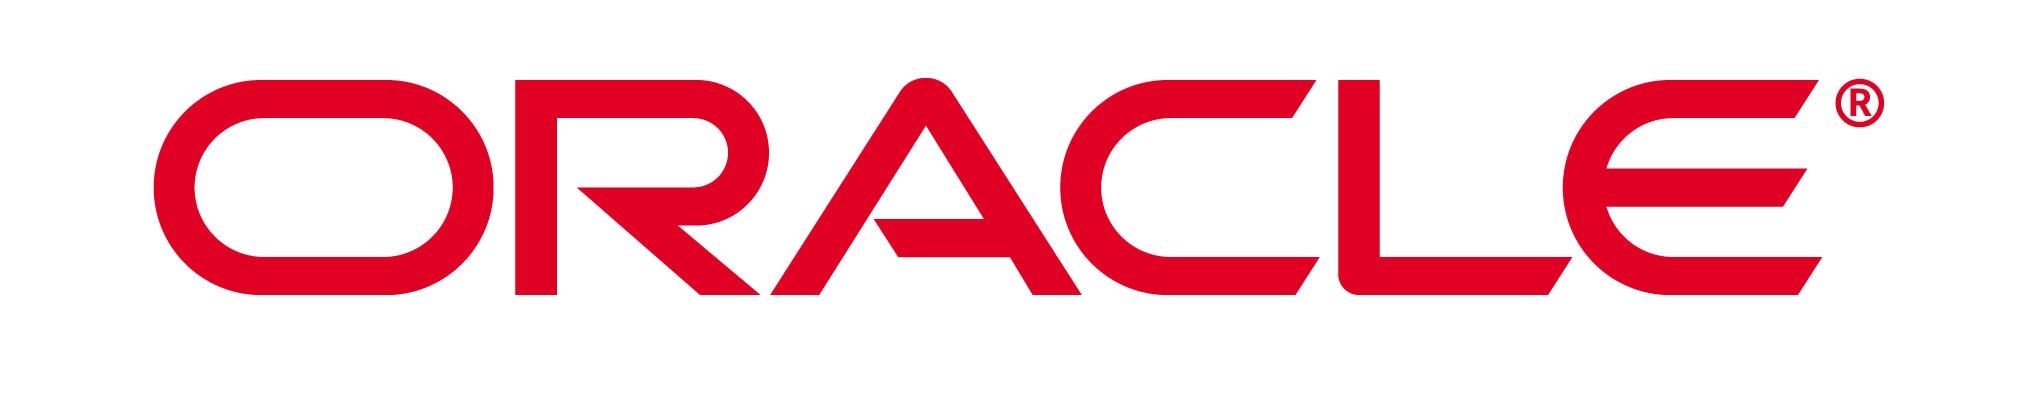 Oracle University Logo photo - 1